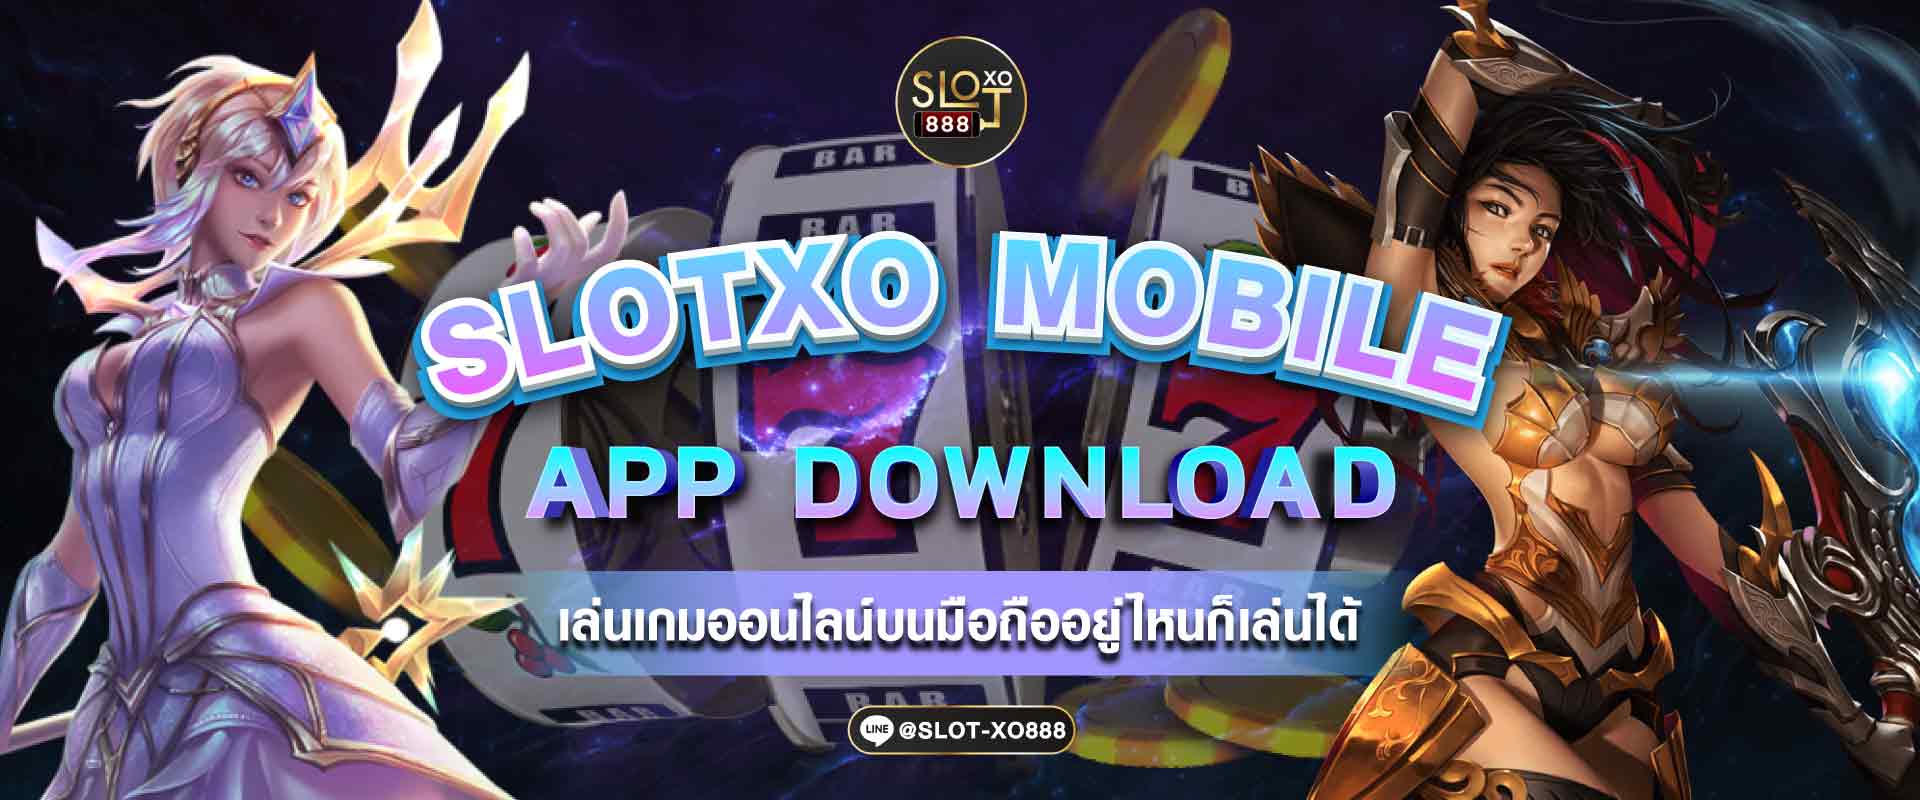 SLOTXO mobile 1407